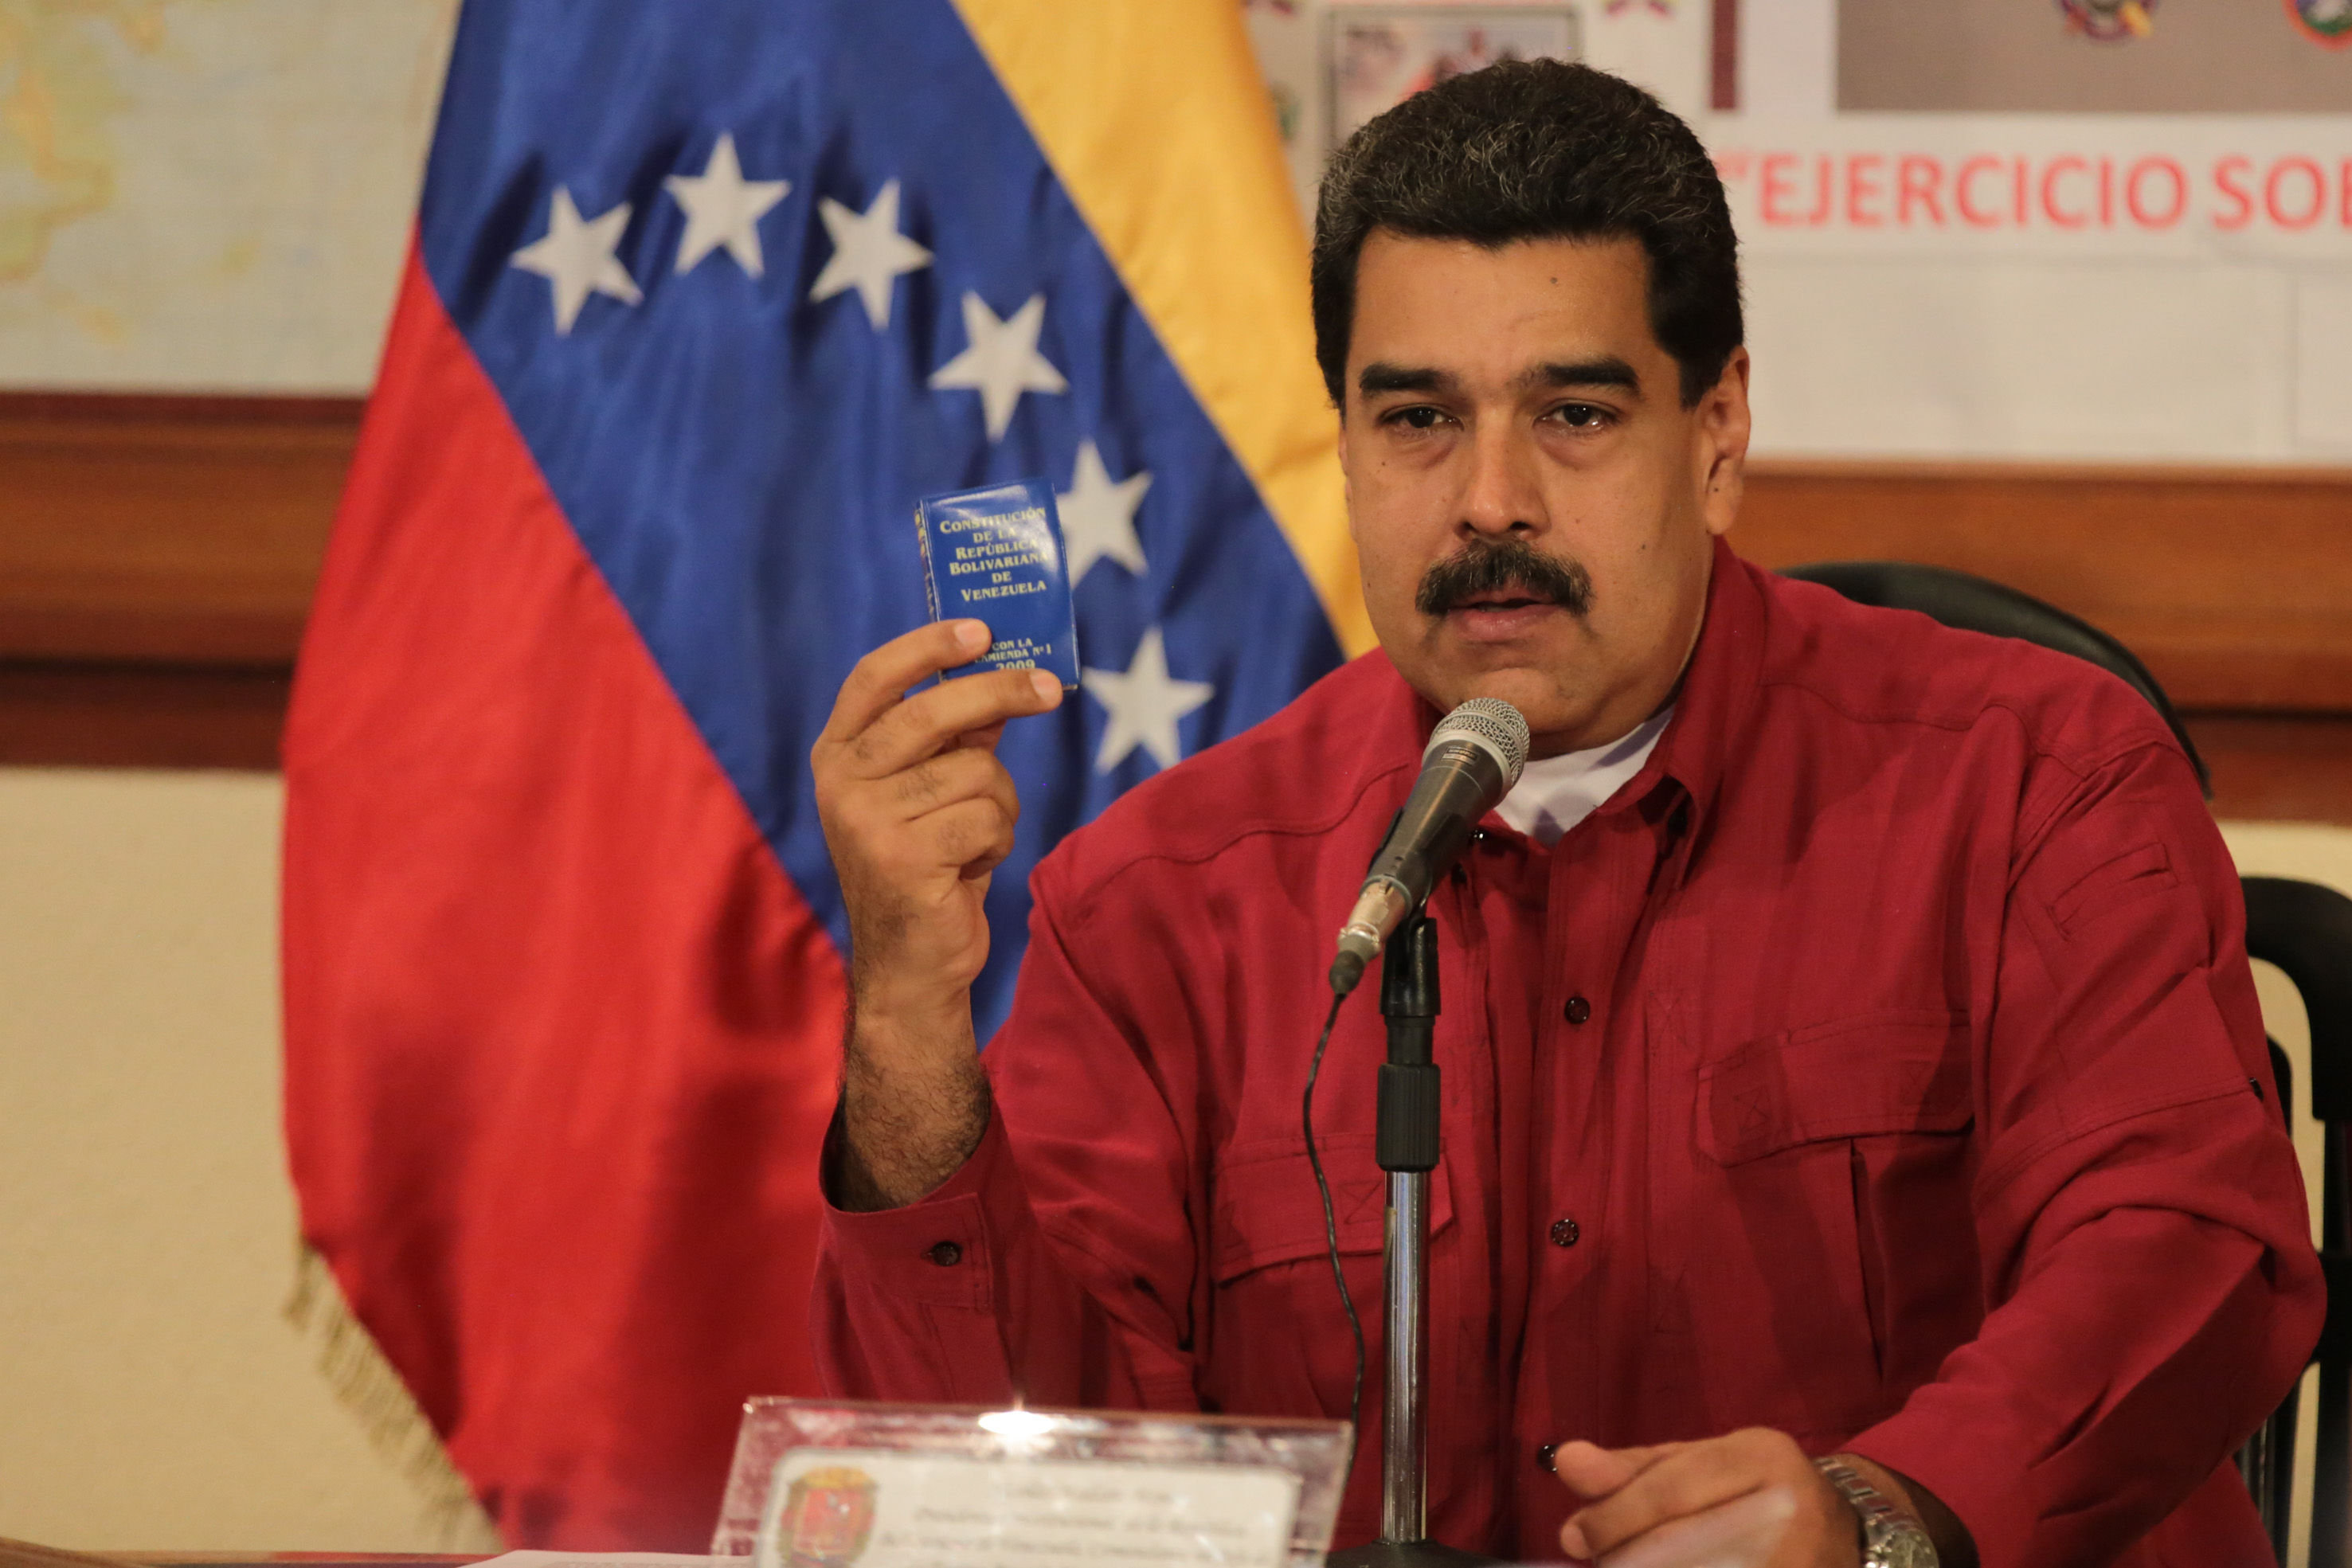 La democracia en Venezuela "apenas está viva", advierte la ONU